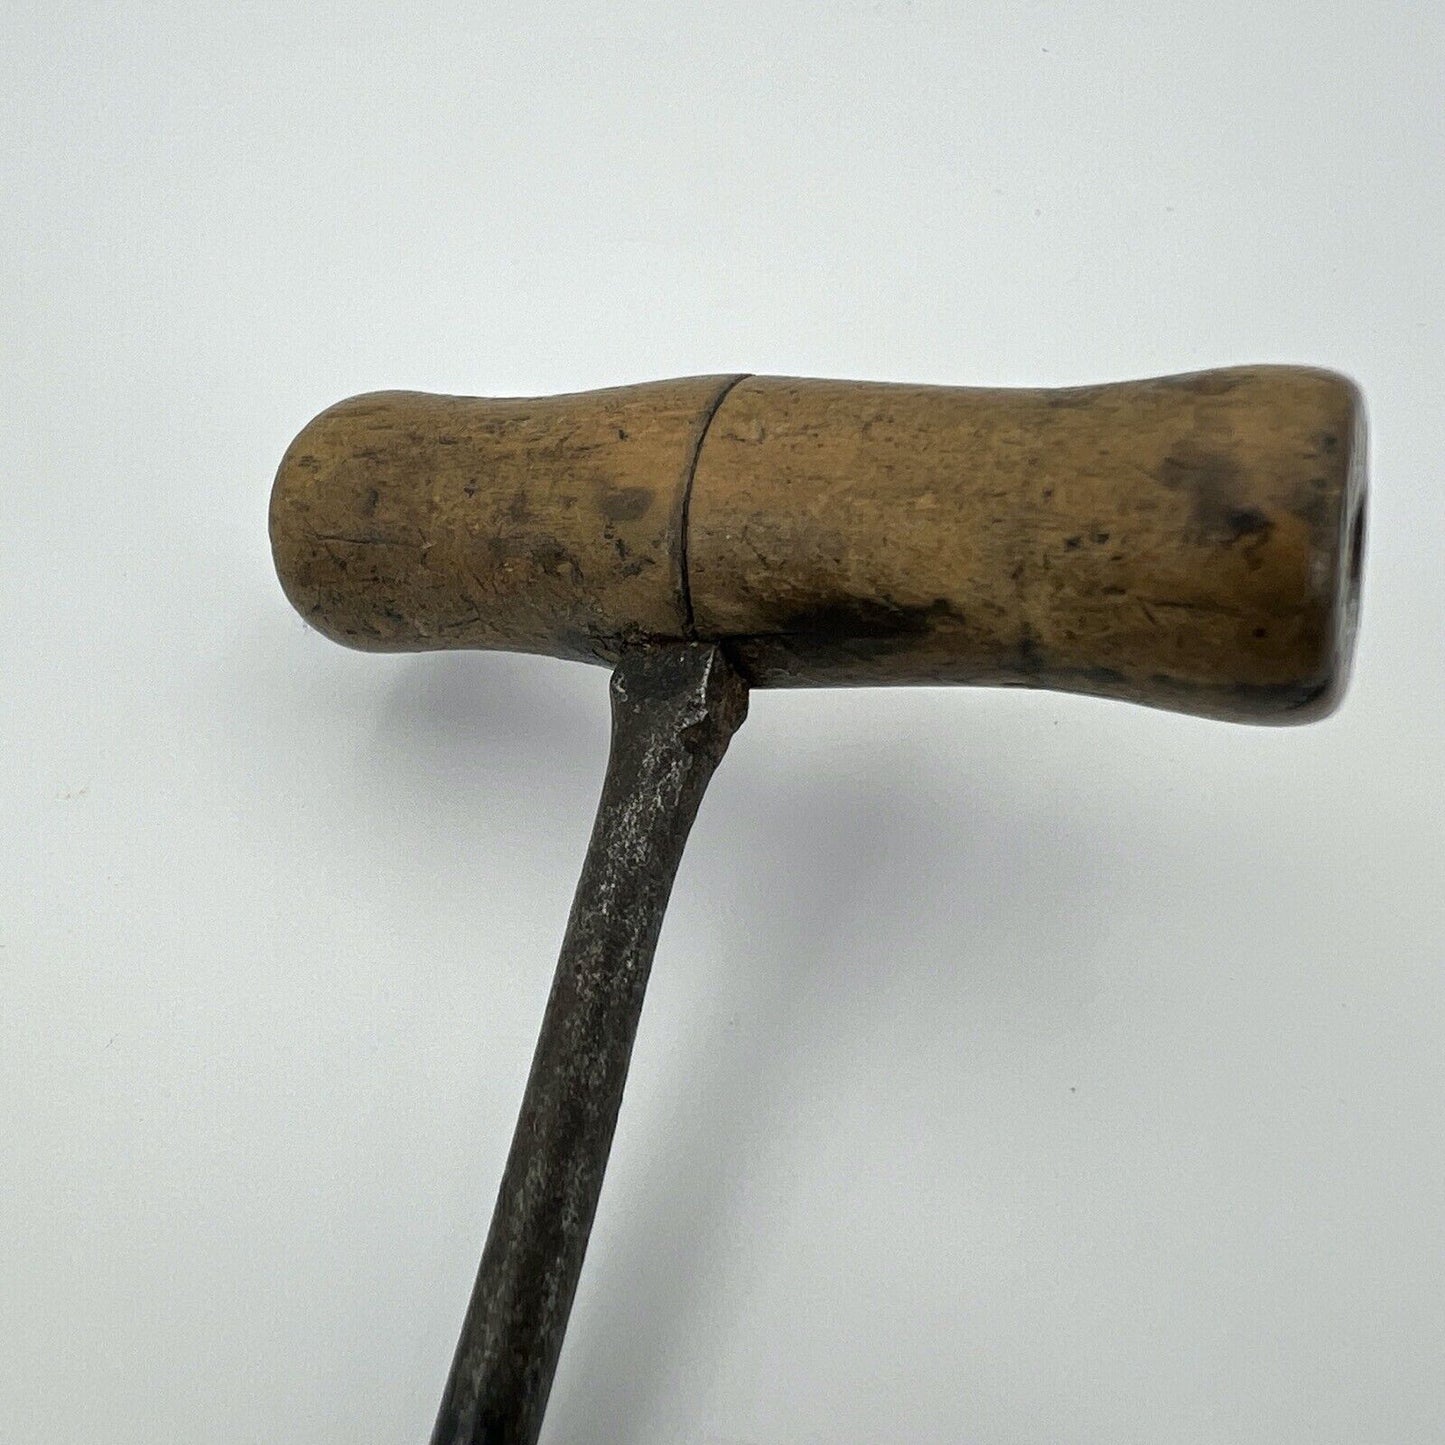 Punteruolo Succhiello Trivellino Antico In legno ferro trapano ferramenta 6 mm